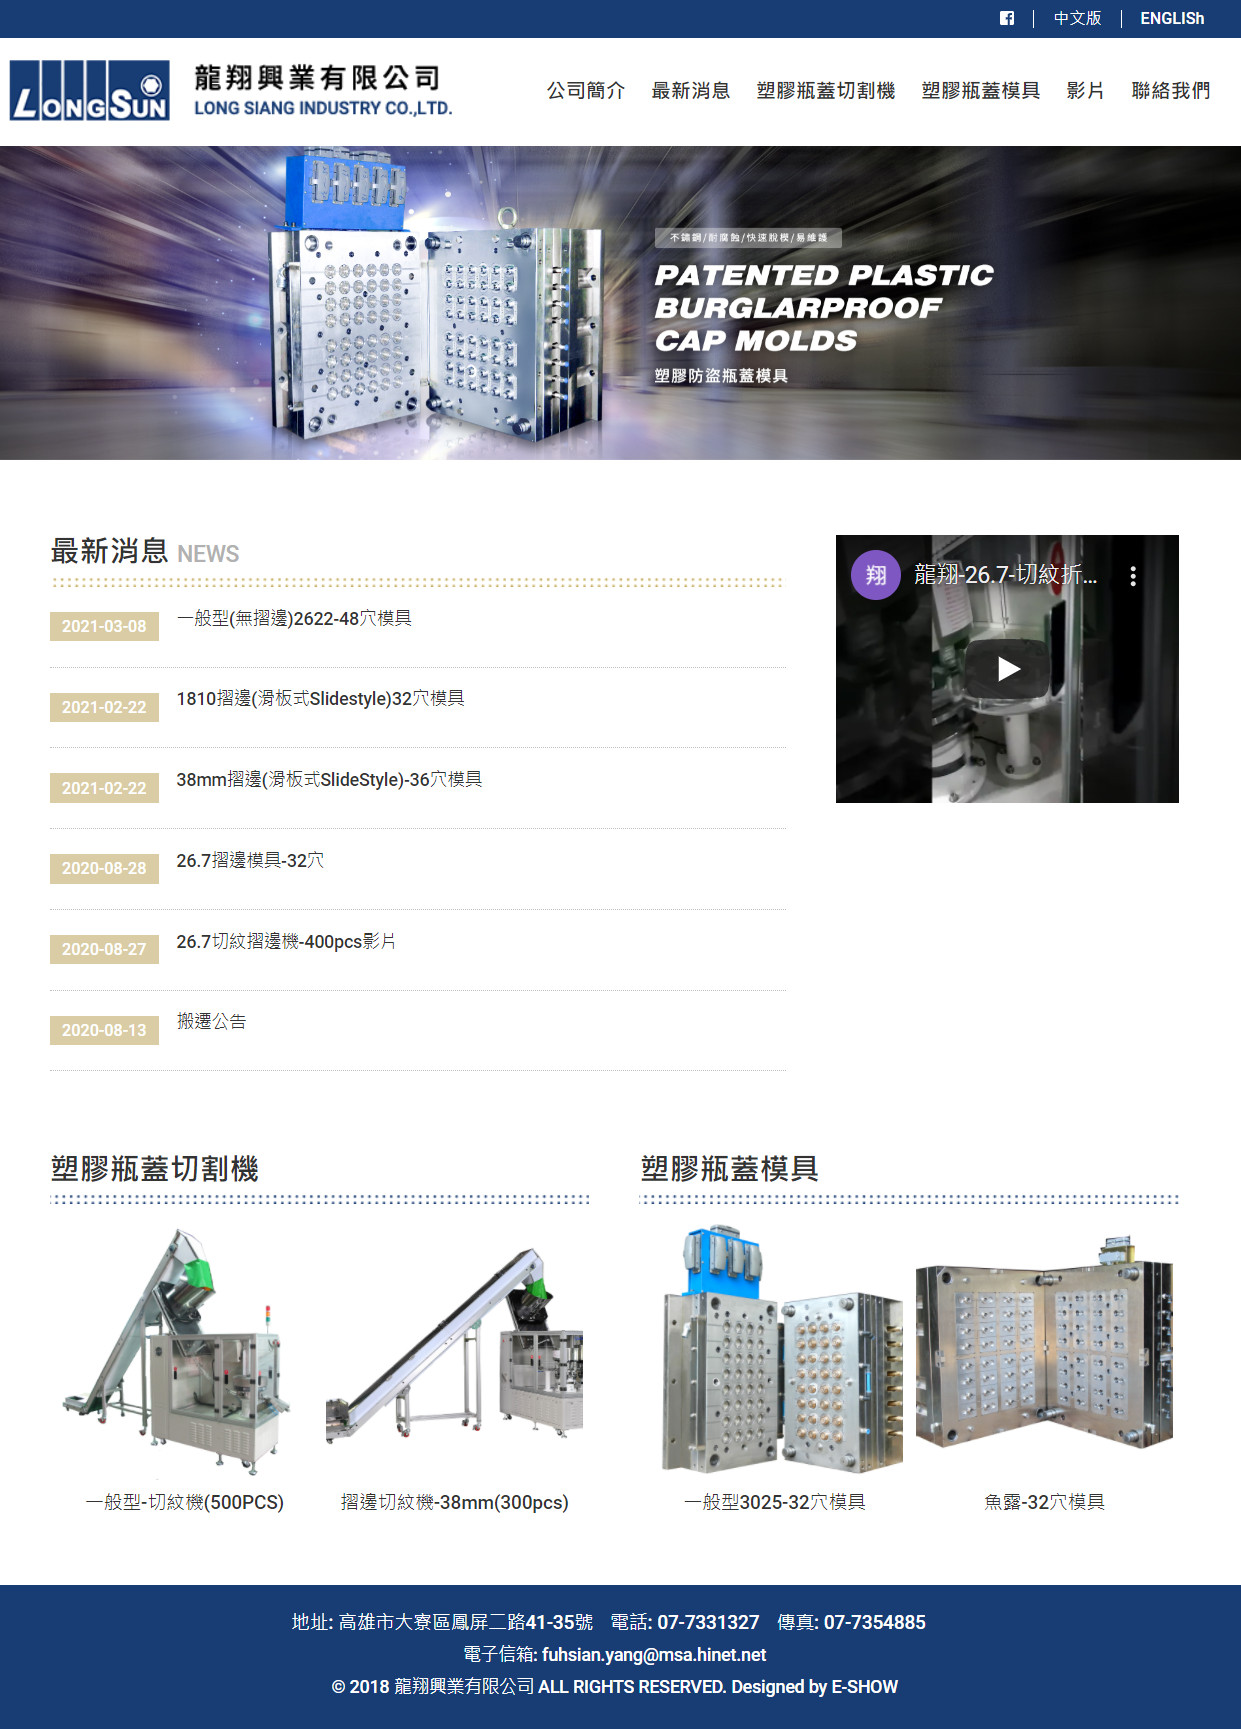 龍翔興業有限公司 響應式網頁設計
網站設計